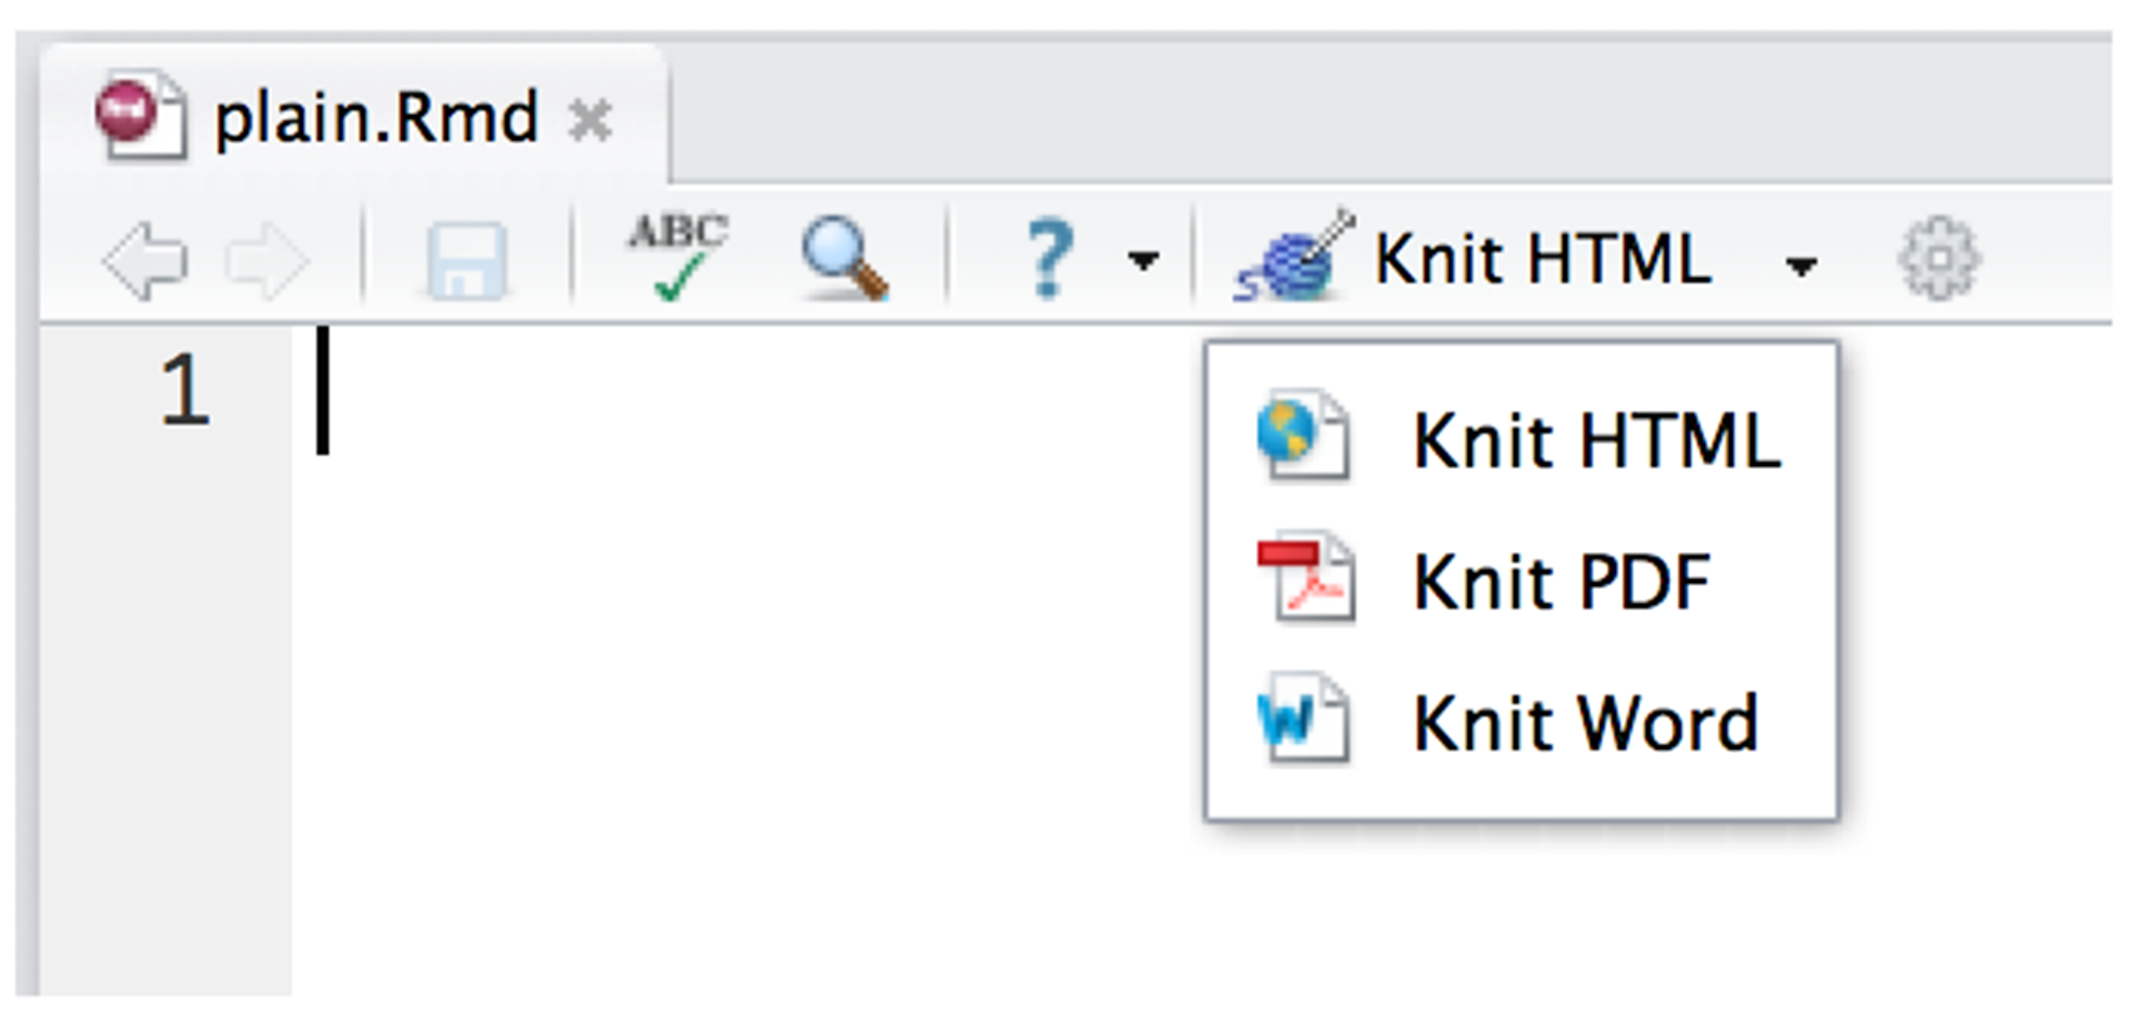 Drop down menu of Knit HTML, Knit PDF and Knit Word